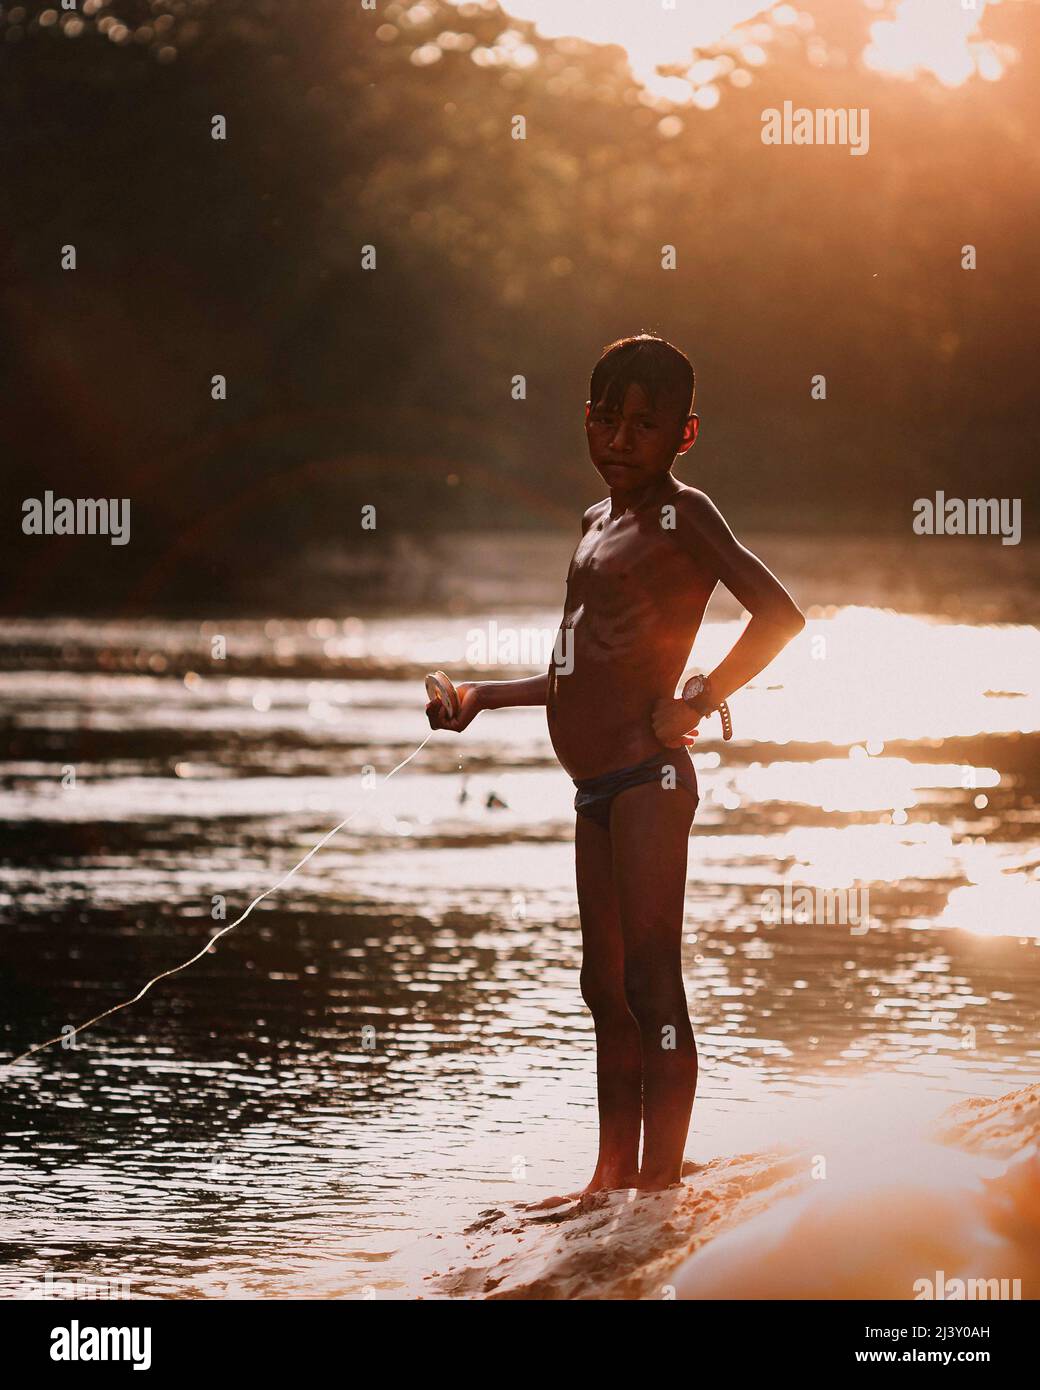 Amazon children immagini e fotografie stock ad alta risoluzione - Alamy